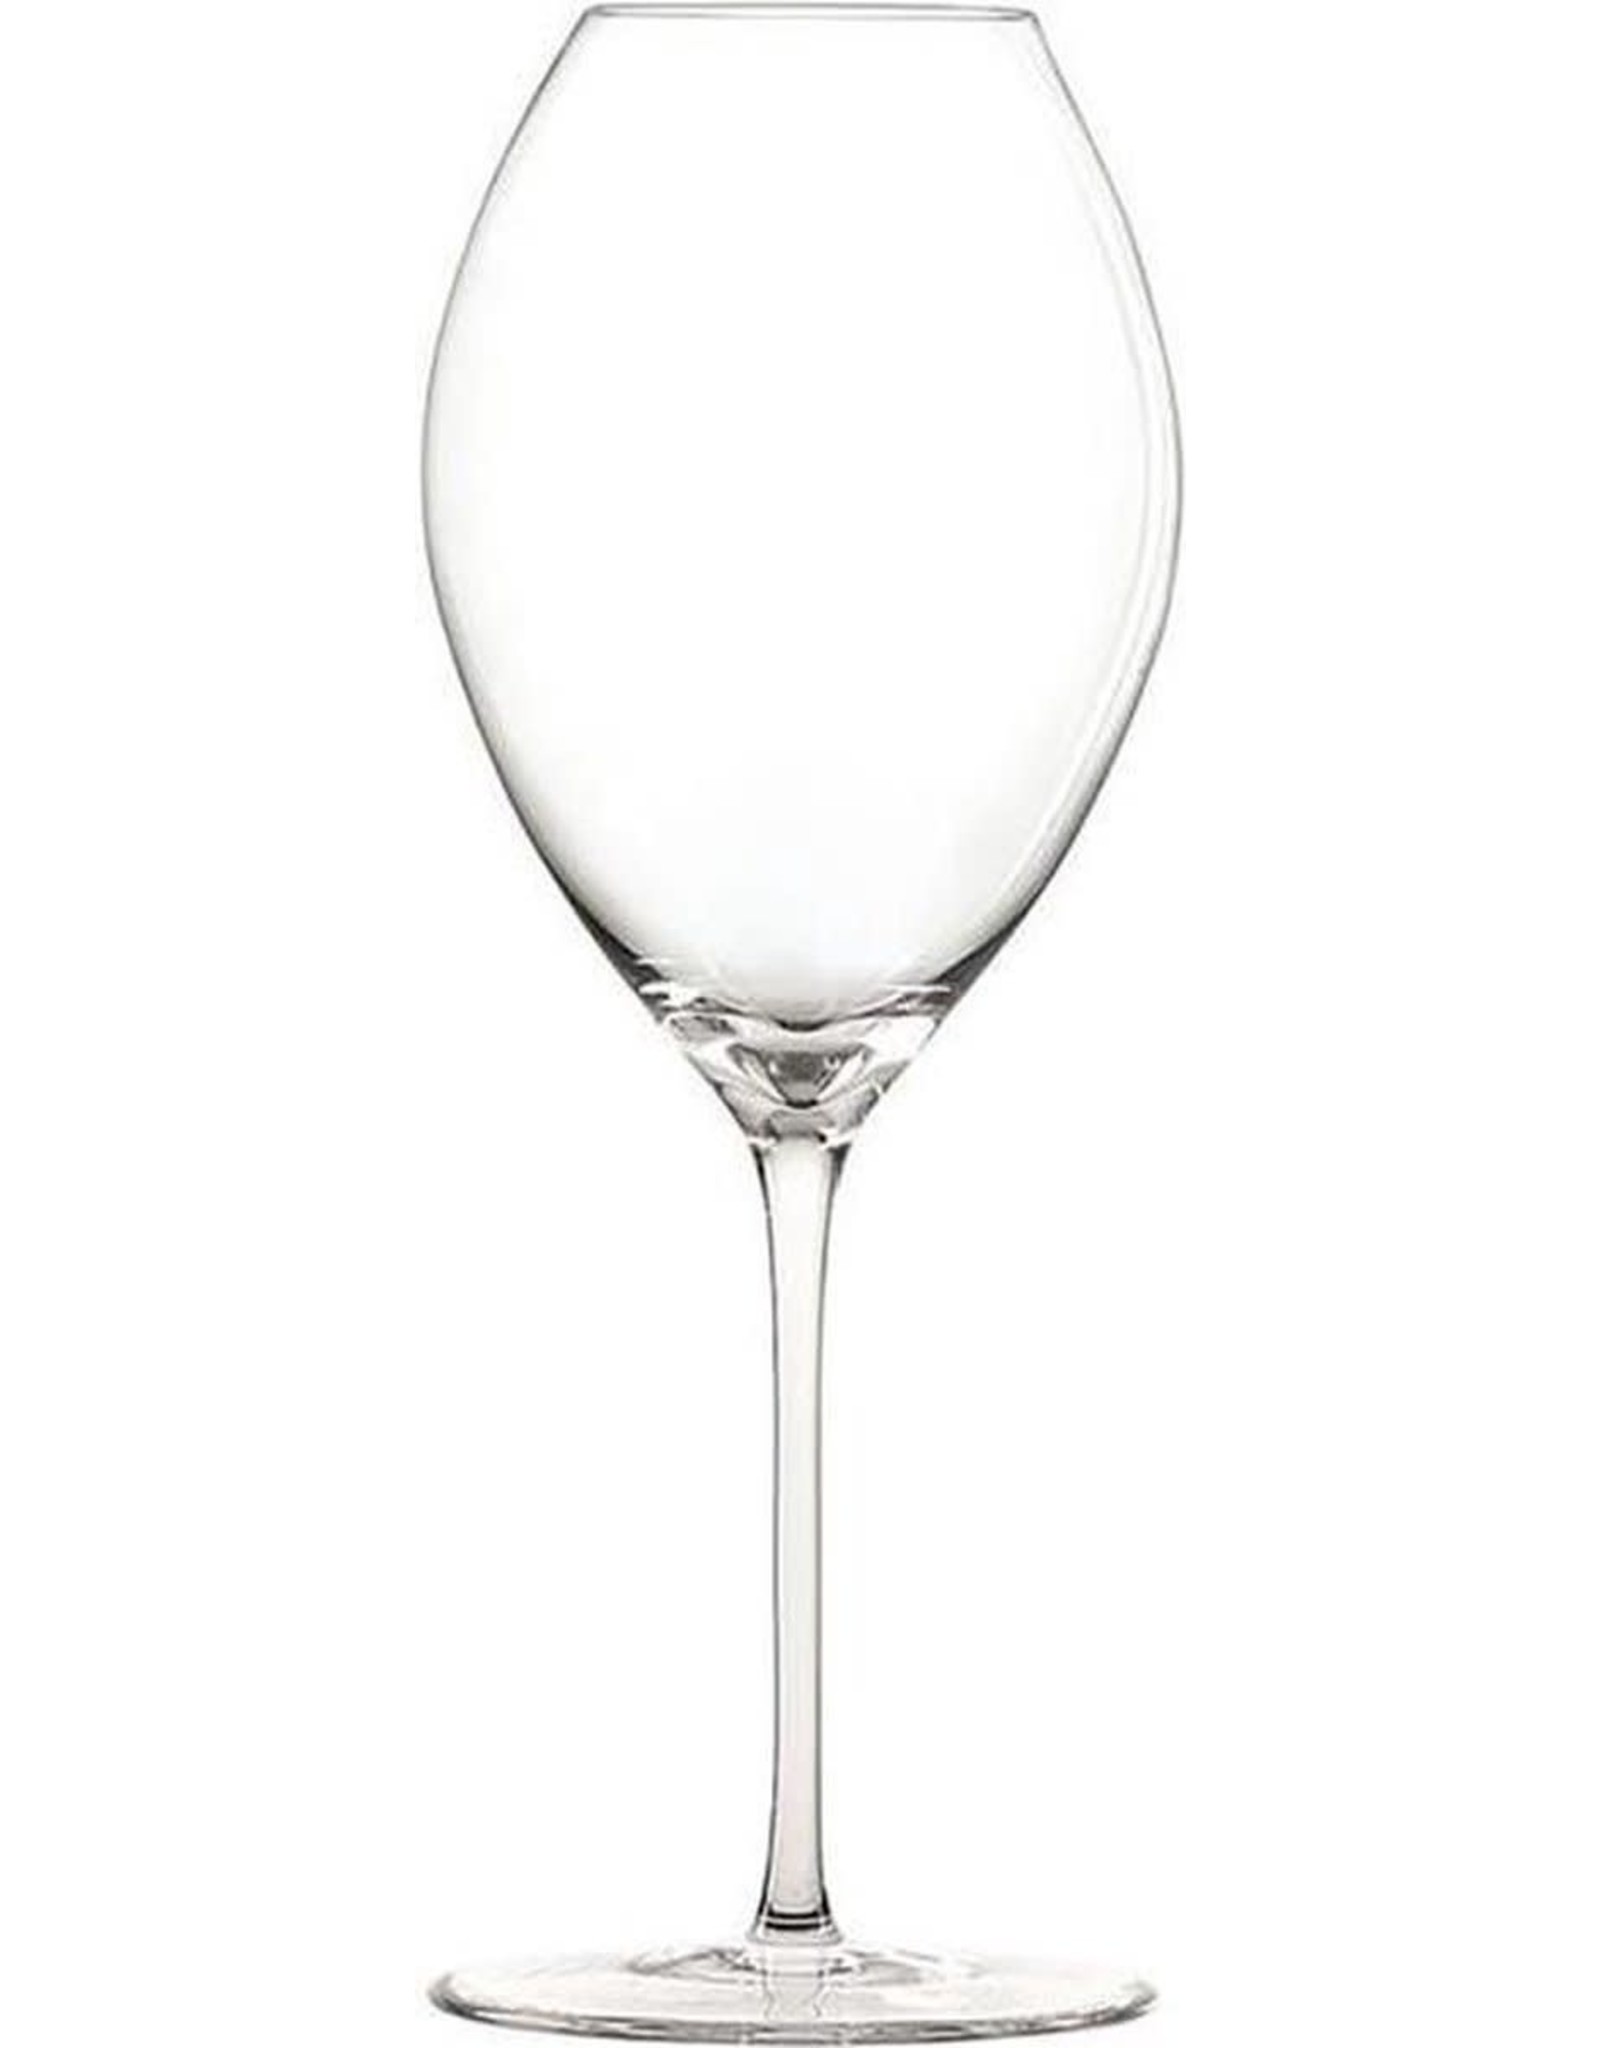 Spiegelau Witte Wijnglas Novo 480 ml - 2 stuks